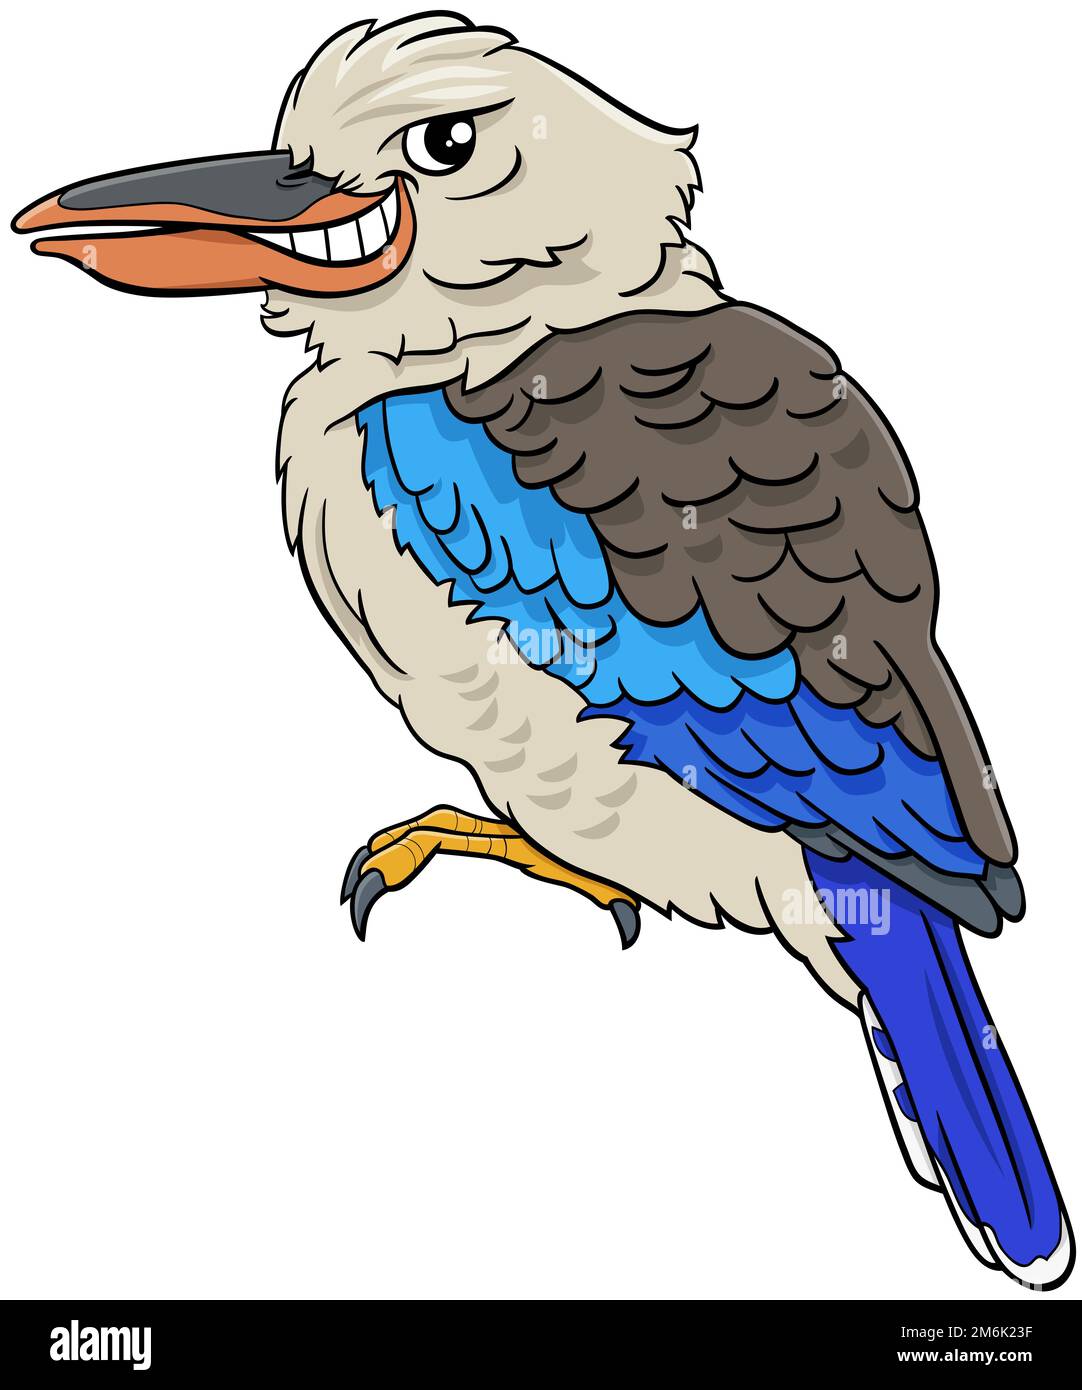 Kookaburra bird animal character cartoon illustration Stock Photo